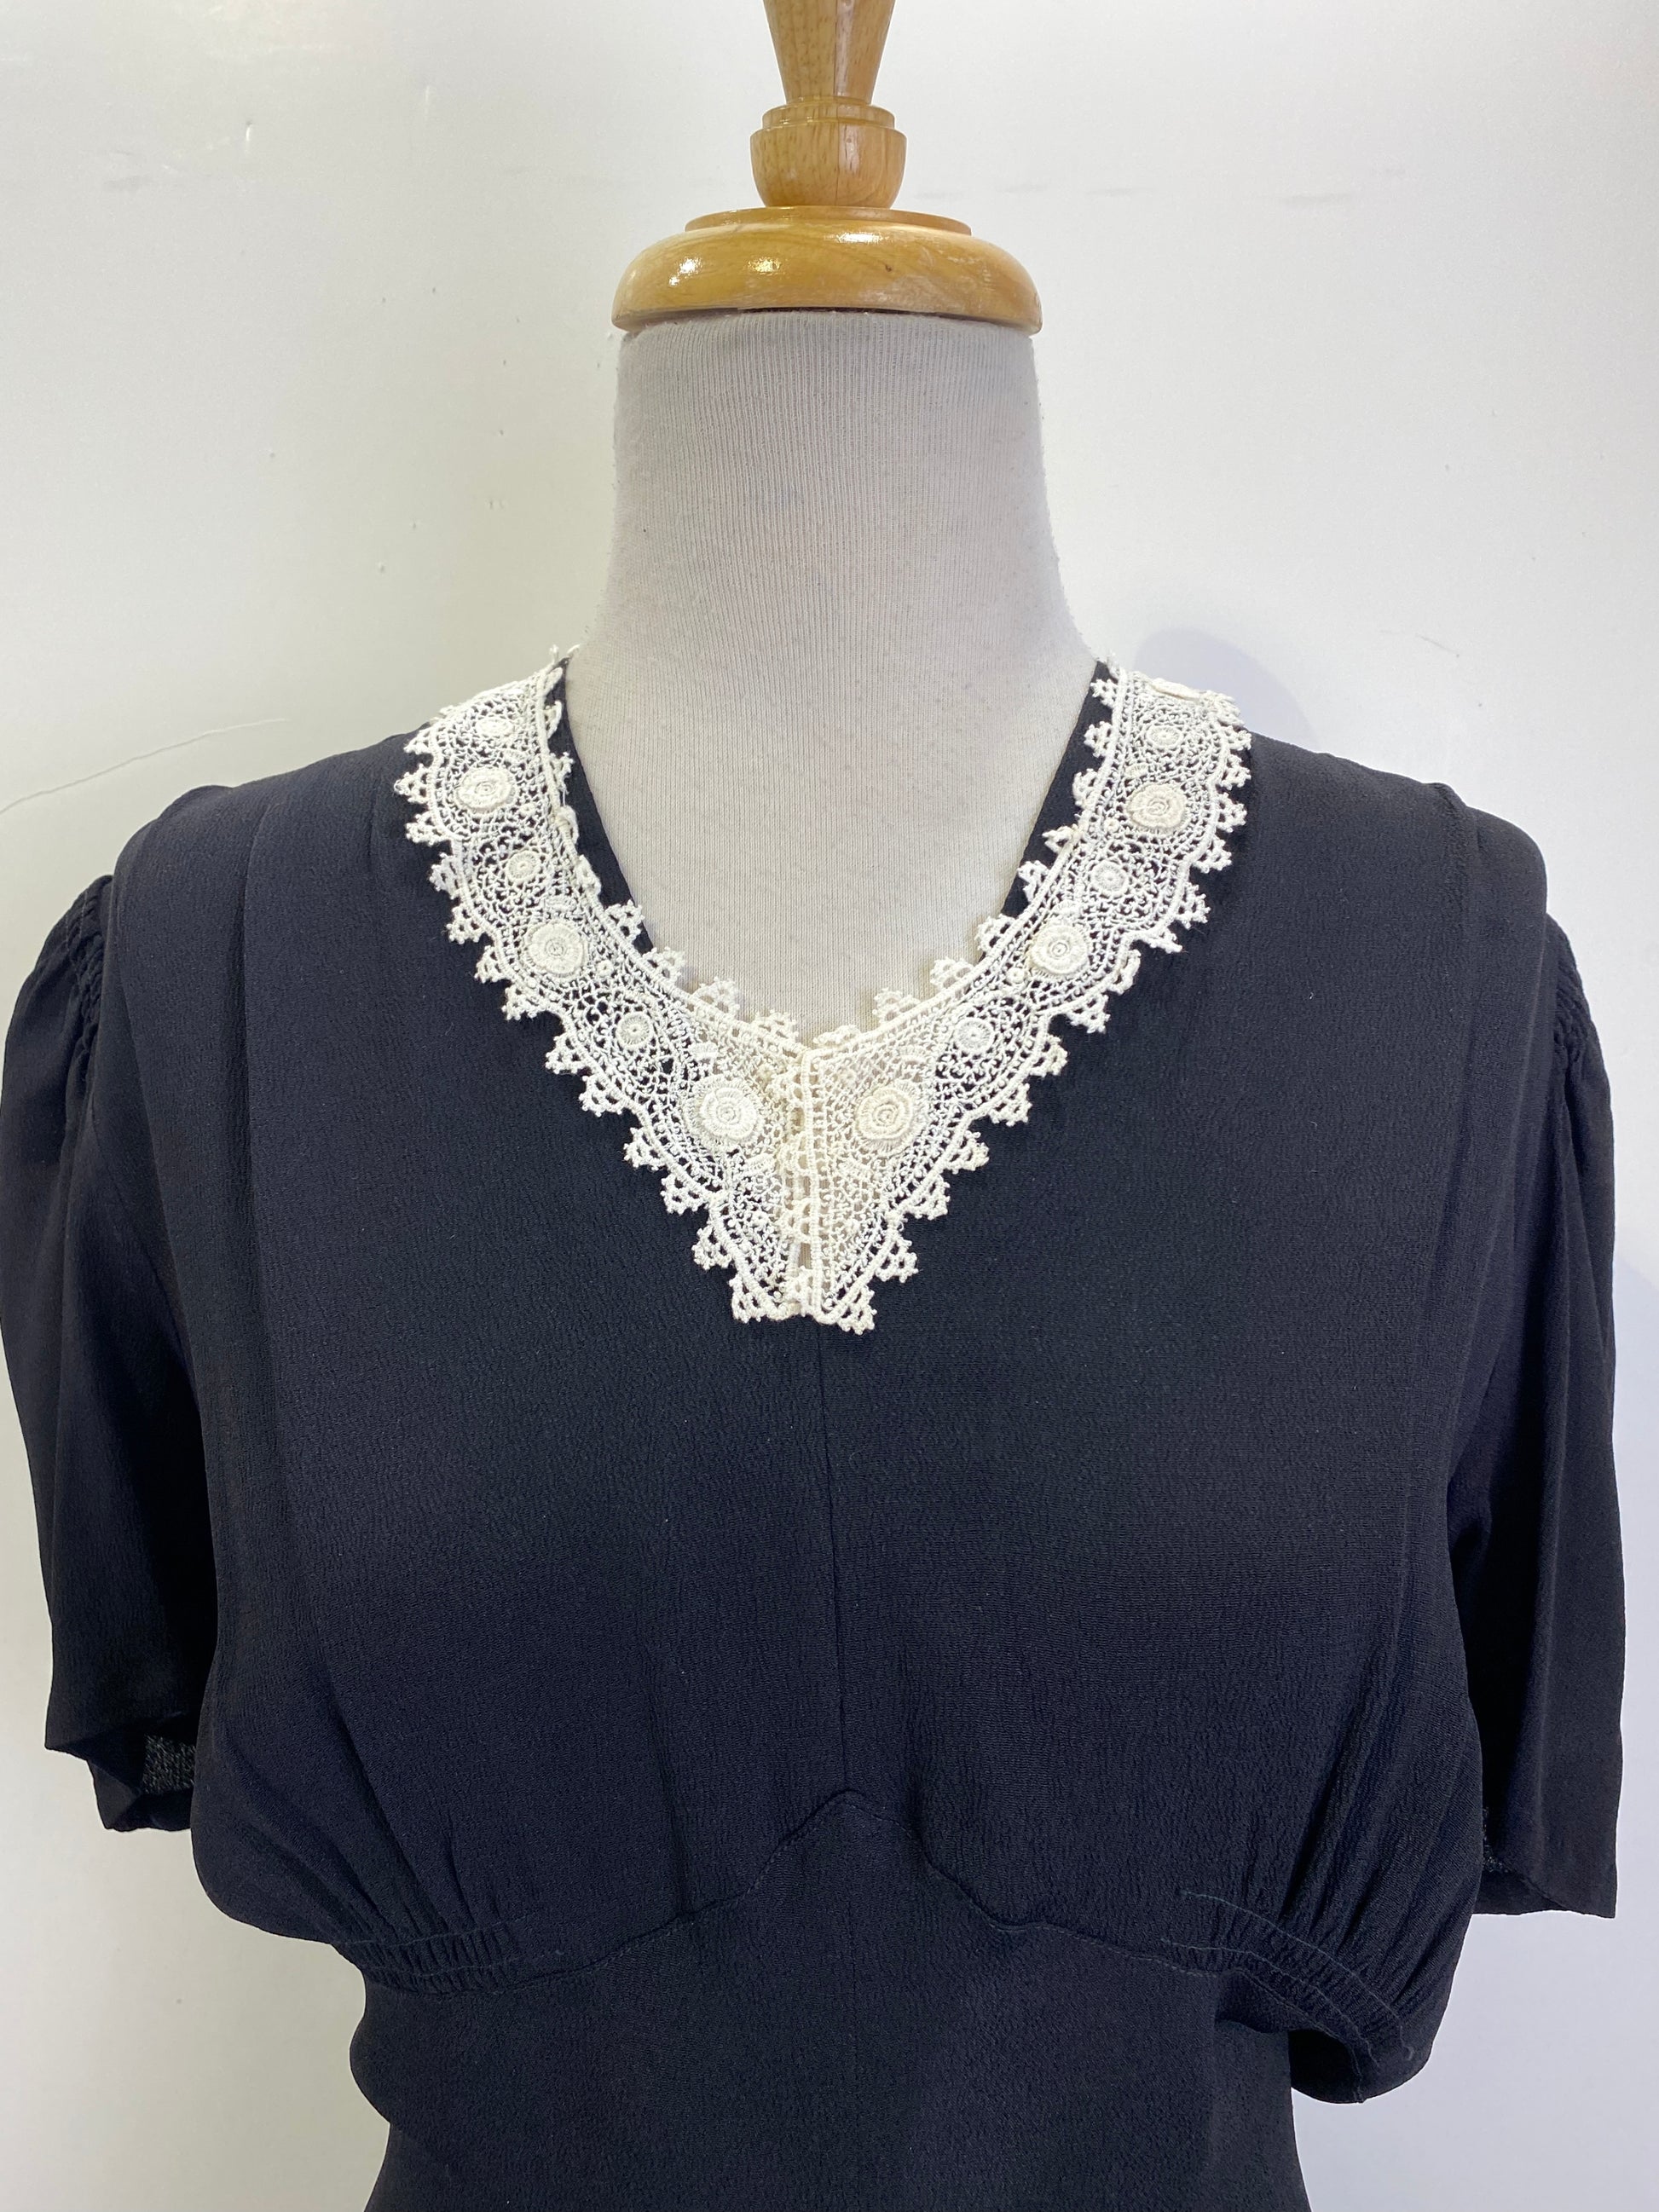 Antique Edwardian White Crochet Lace Collar